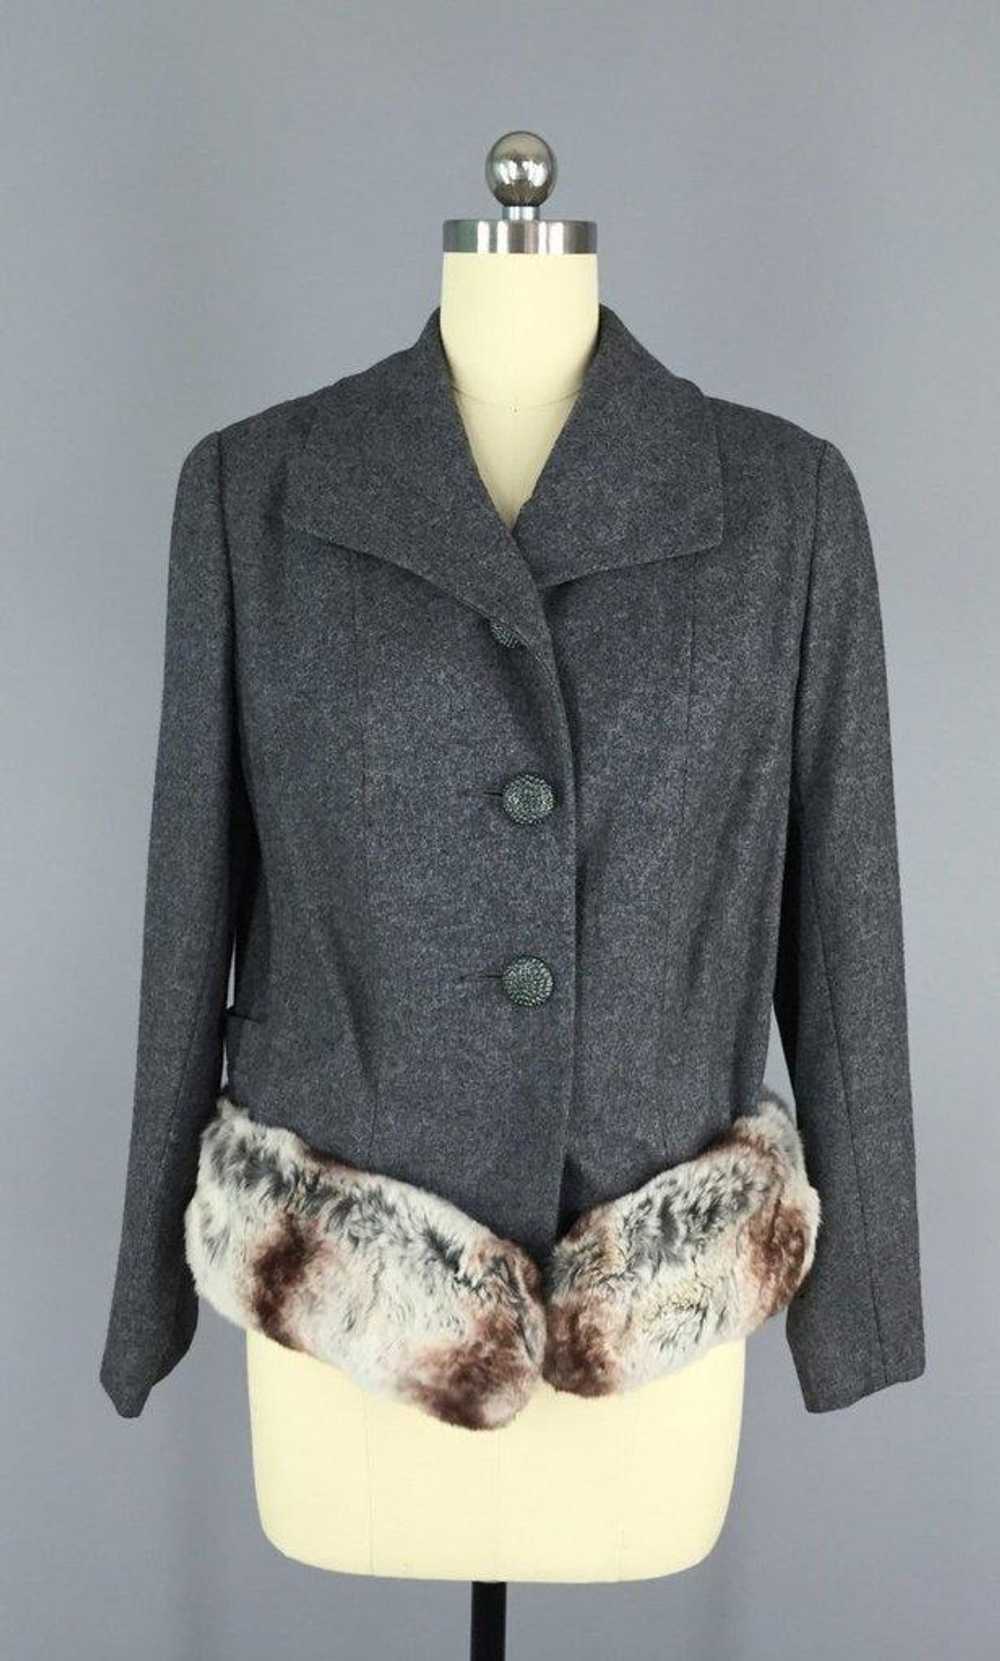 Vintage 1940s Grey Wool Jacket with Fur Trim - image 1